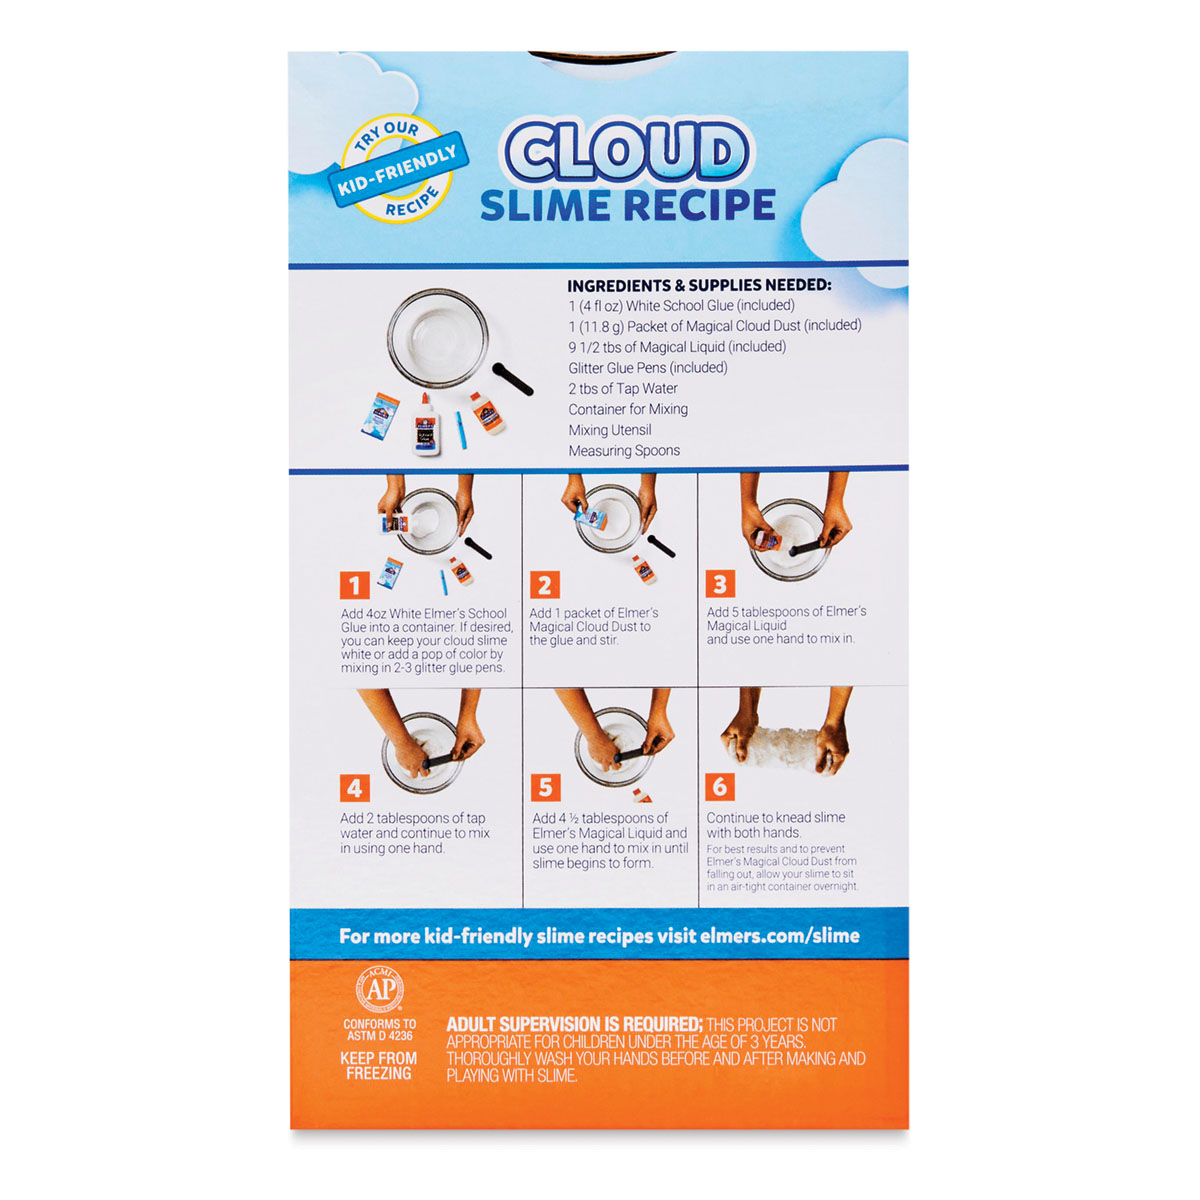 Elmer's Slime Kit - Color Changing Slime Kit